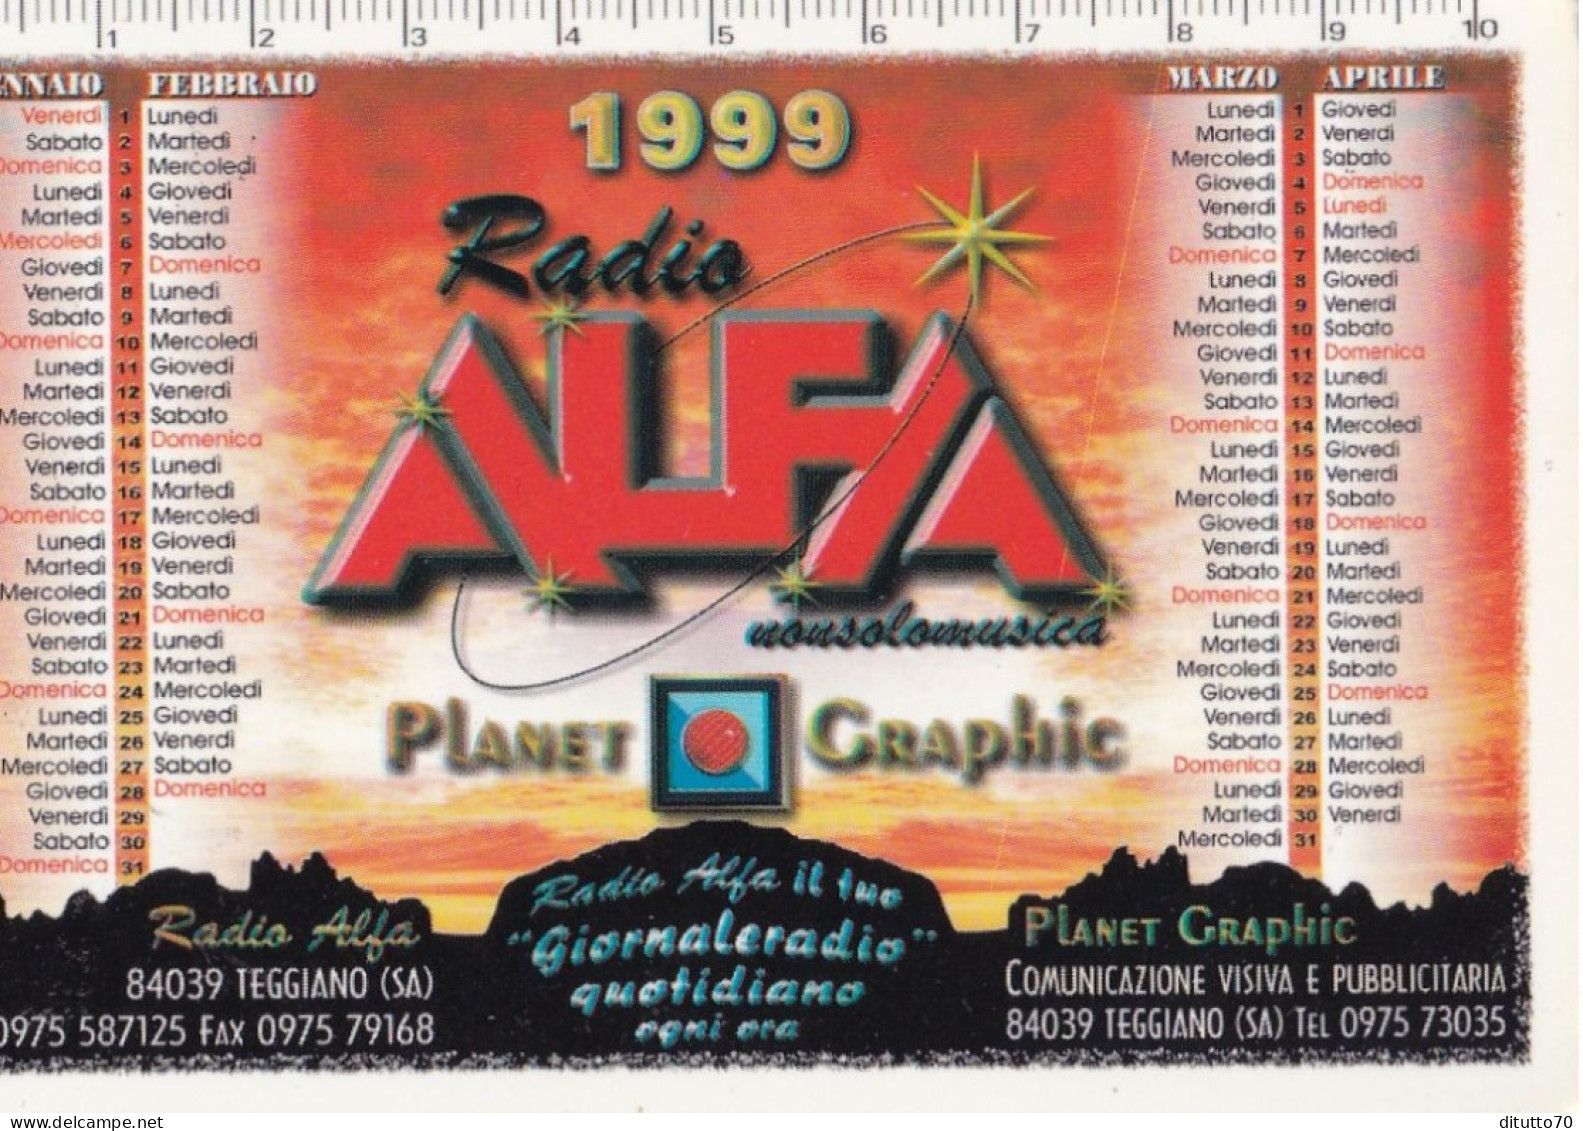 Calendarietto - RADIO - ALFA - Teggiano - Salerno - Anno 1999 - Small : 1991-00